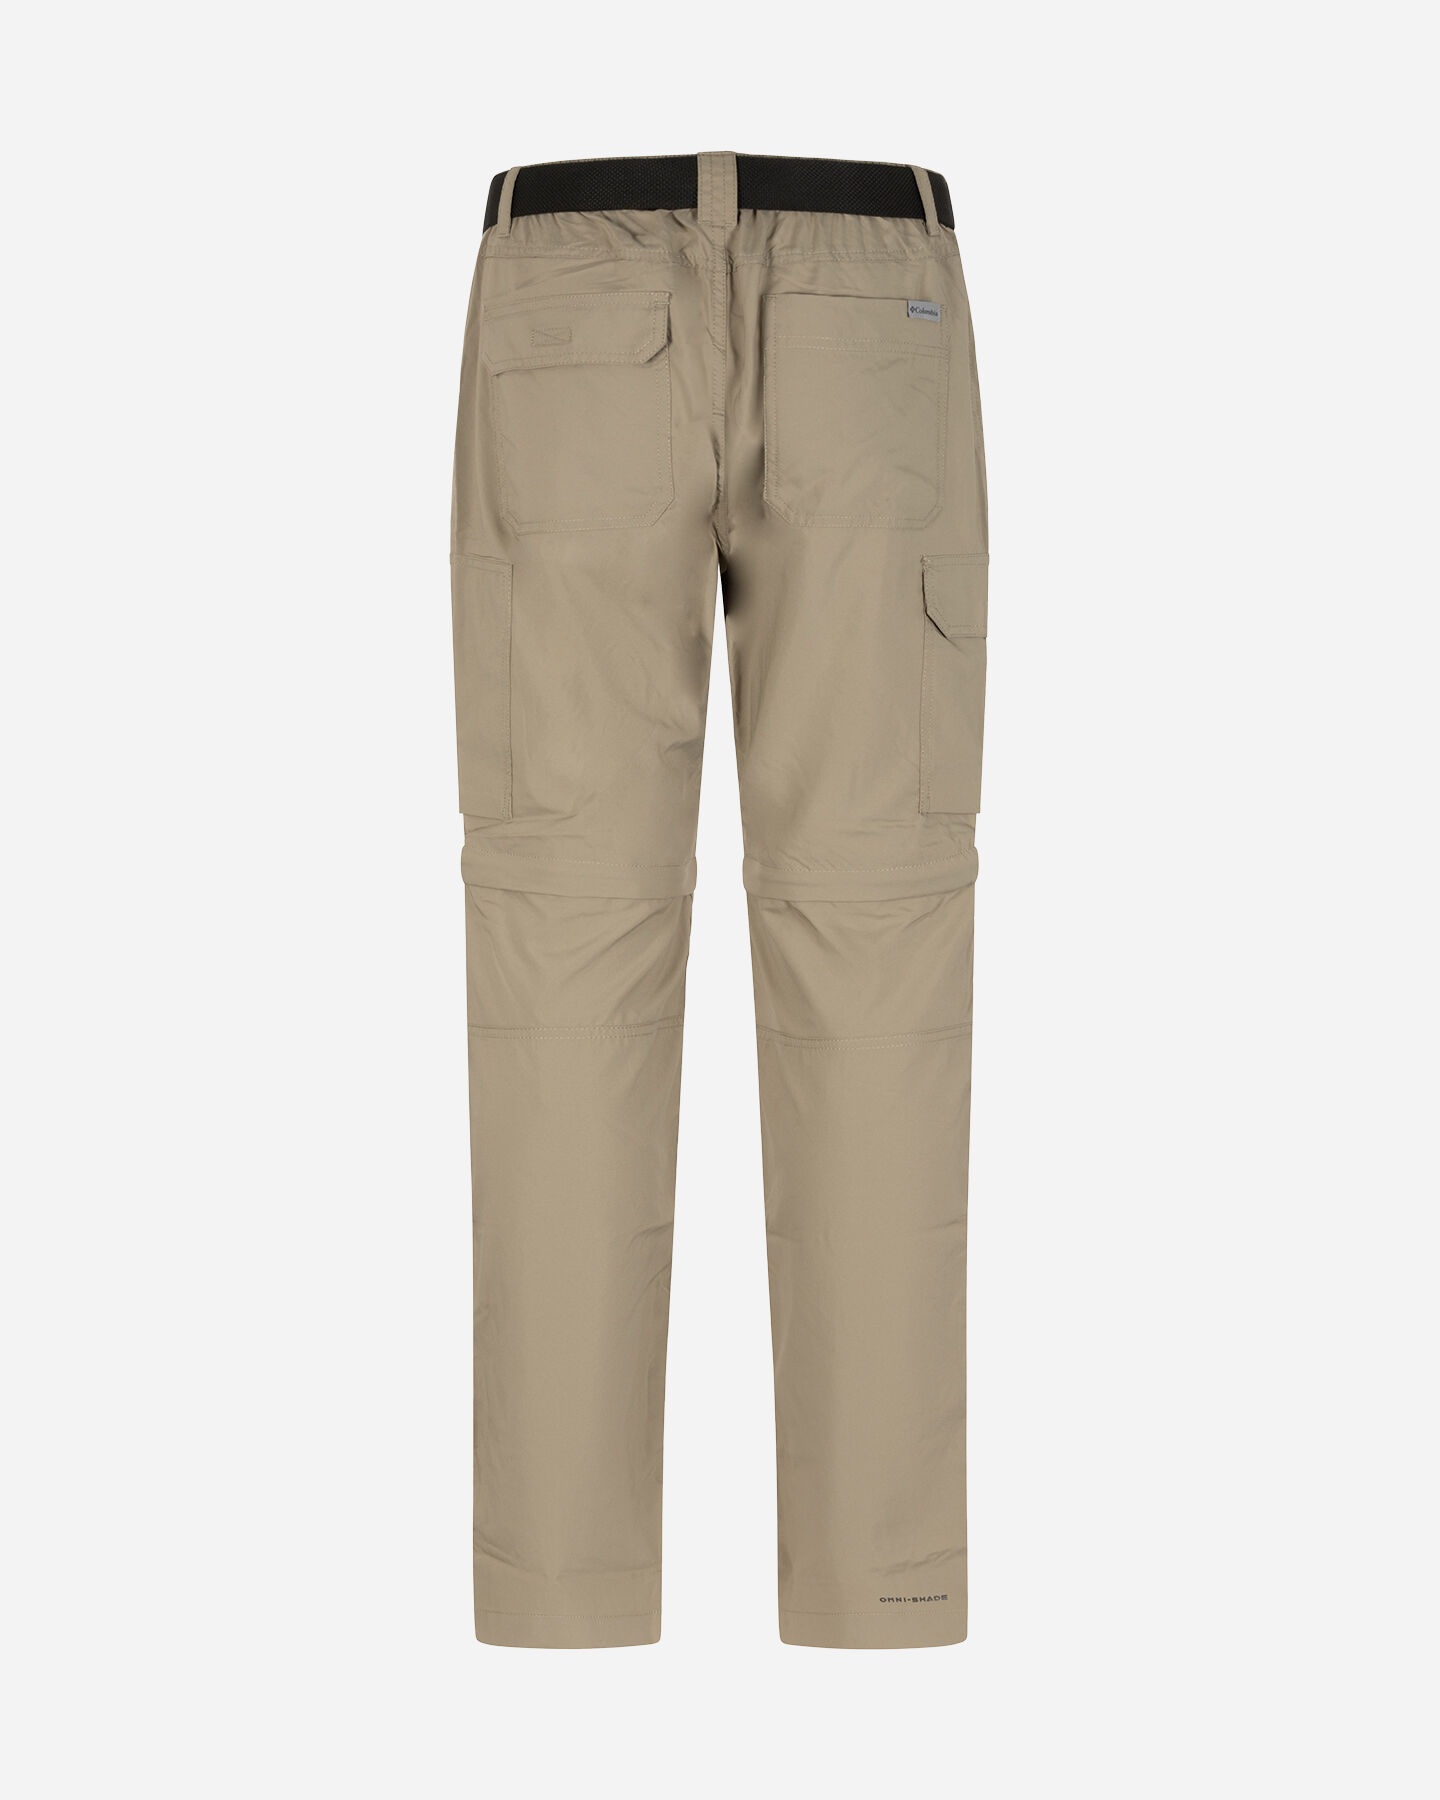  Pantalone outdoor COLUMBIA SILVER RIDGE M S5553529|221|3032 scatto 1